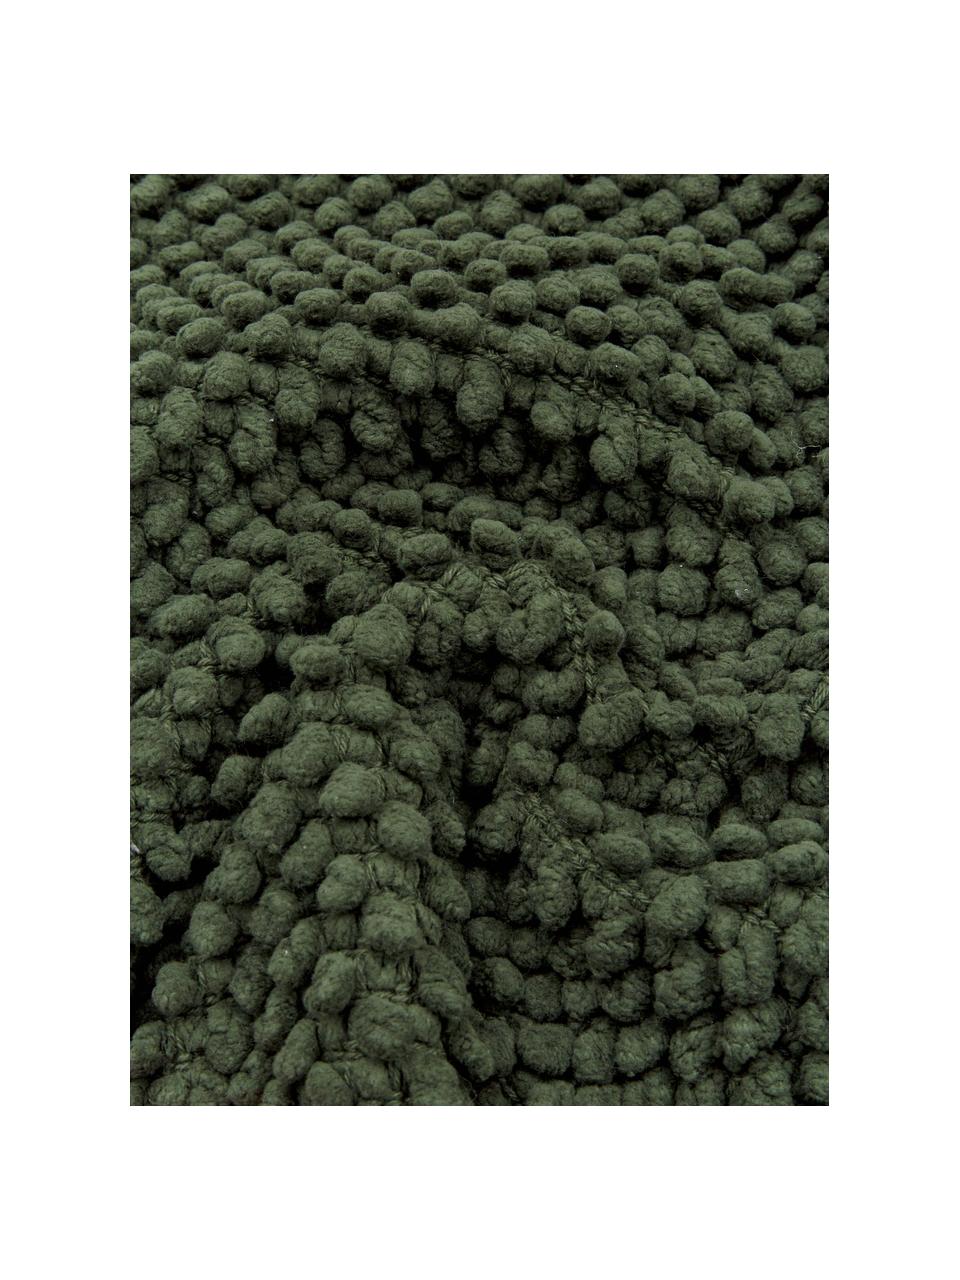 Kussenhoes Indi met gestructureerde oppervlak in donkergroen, 100% katoen, Donkergroen, 45 x 45 cm